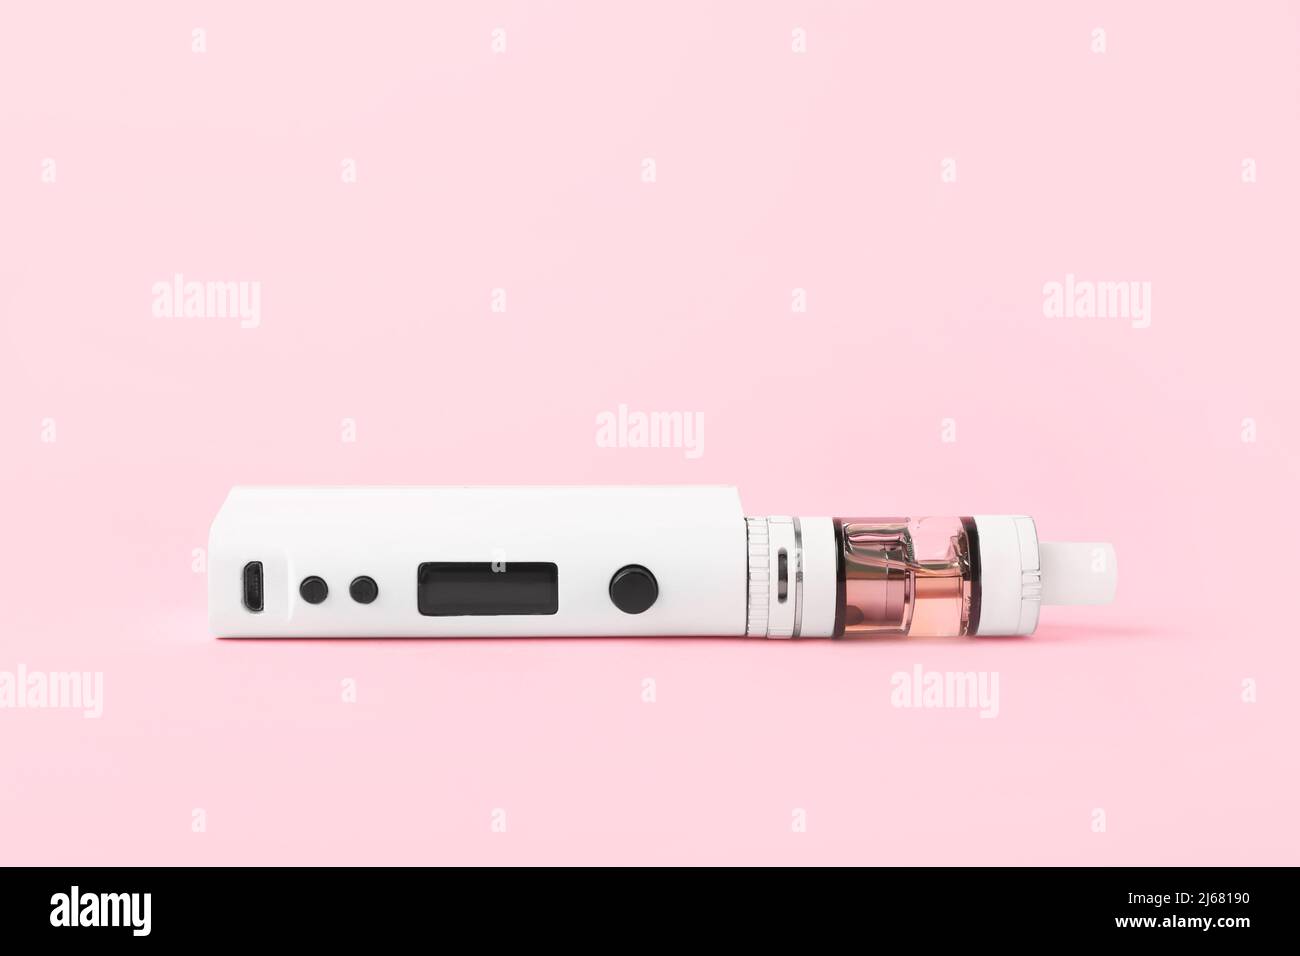 Modern vape mod on pink background Stock Photo - Alamy